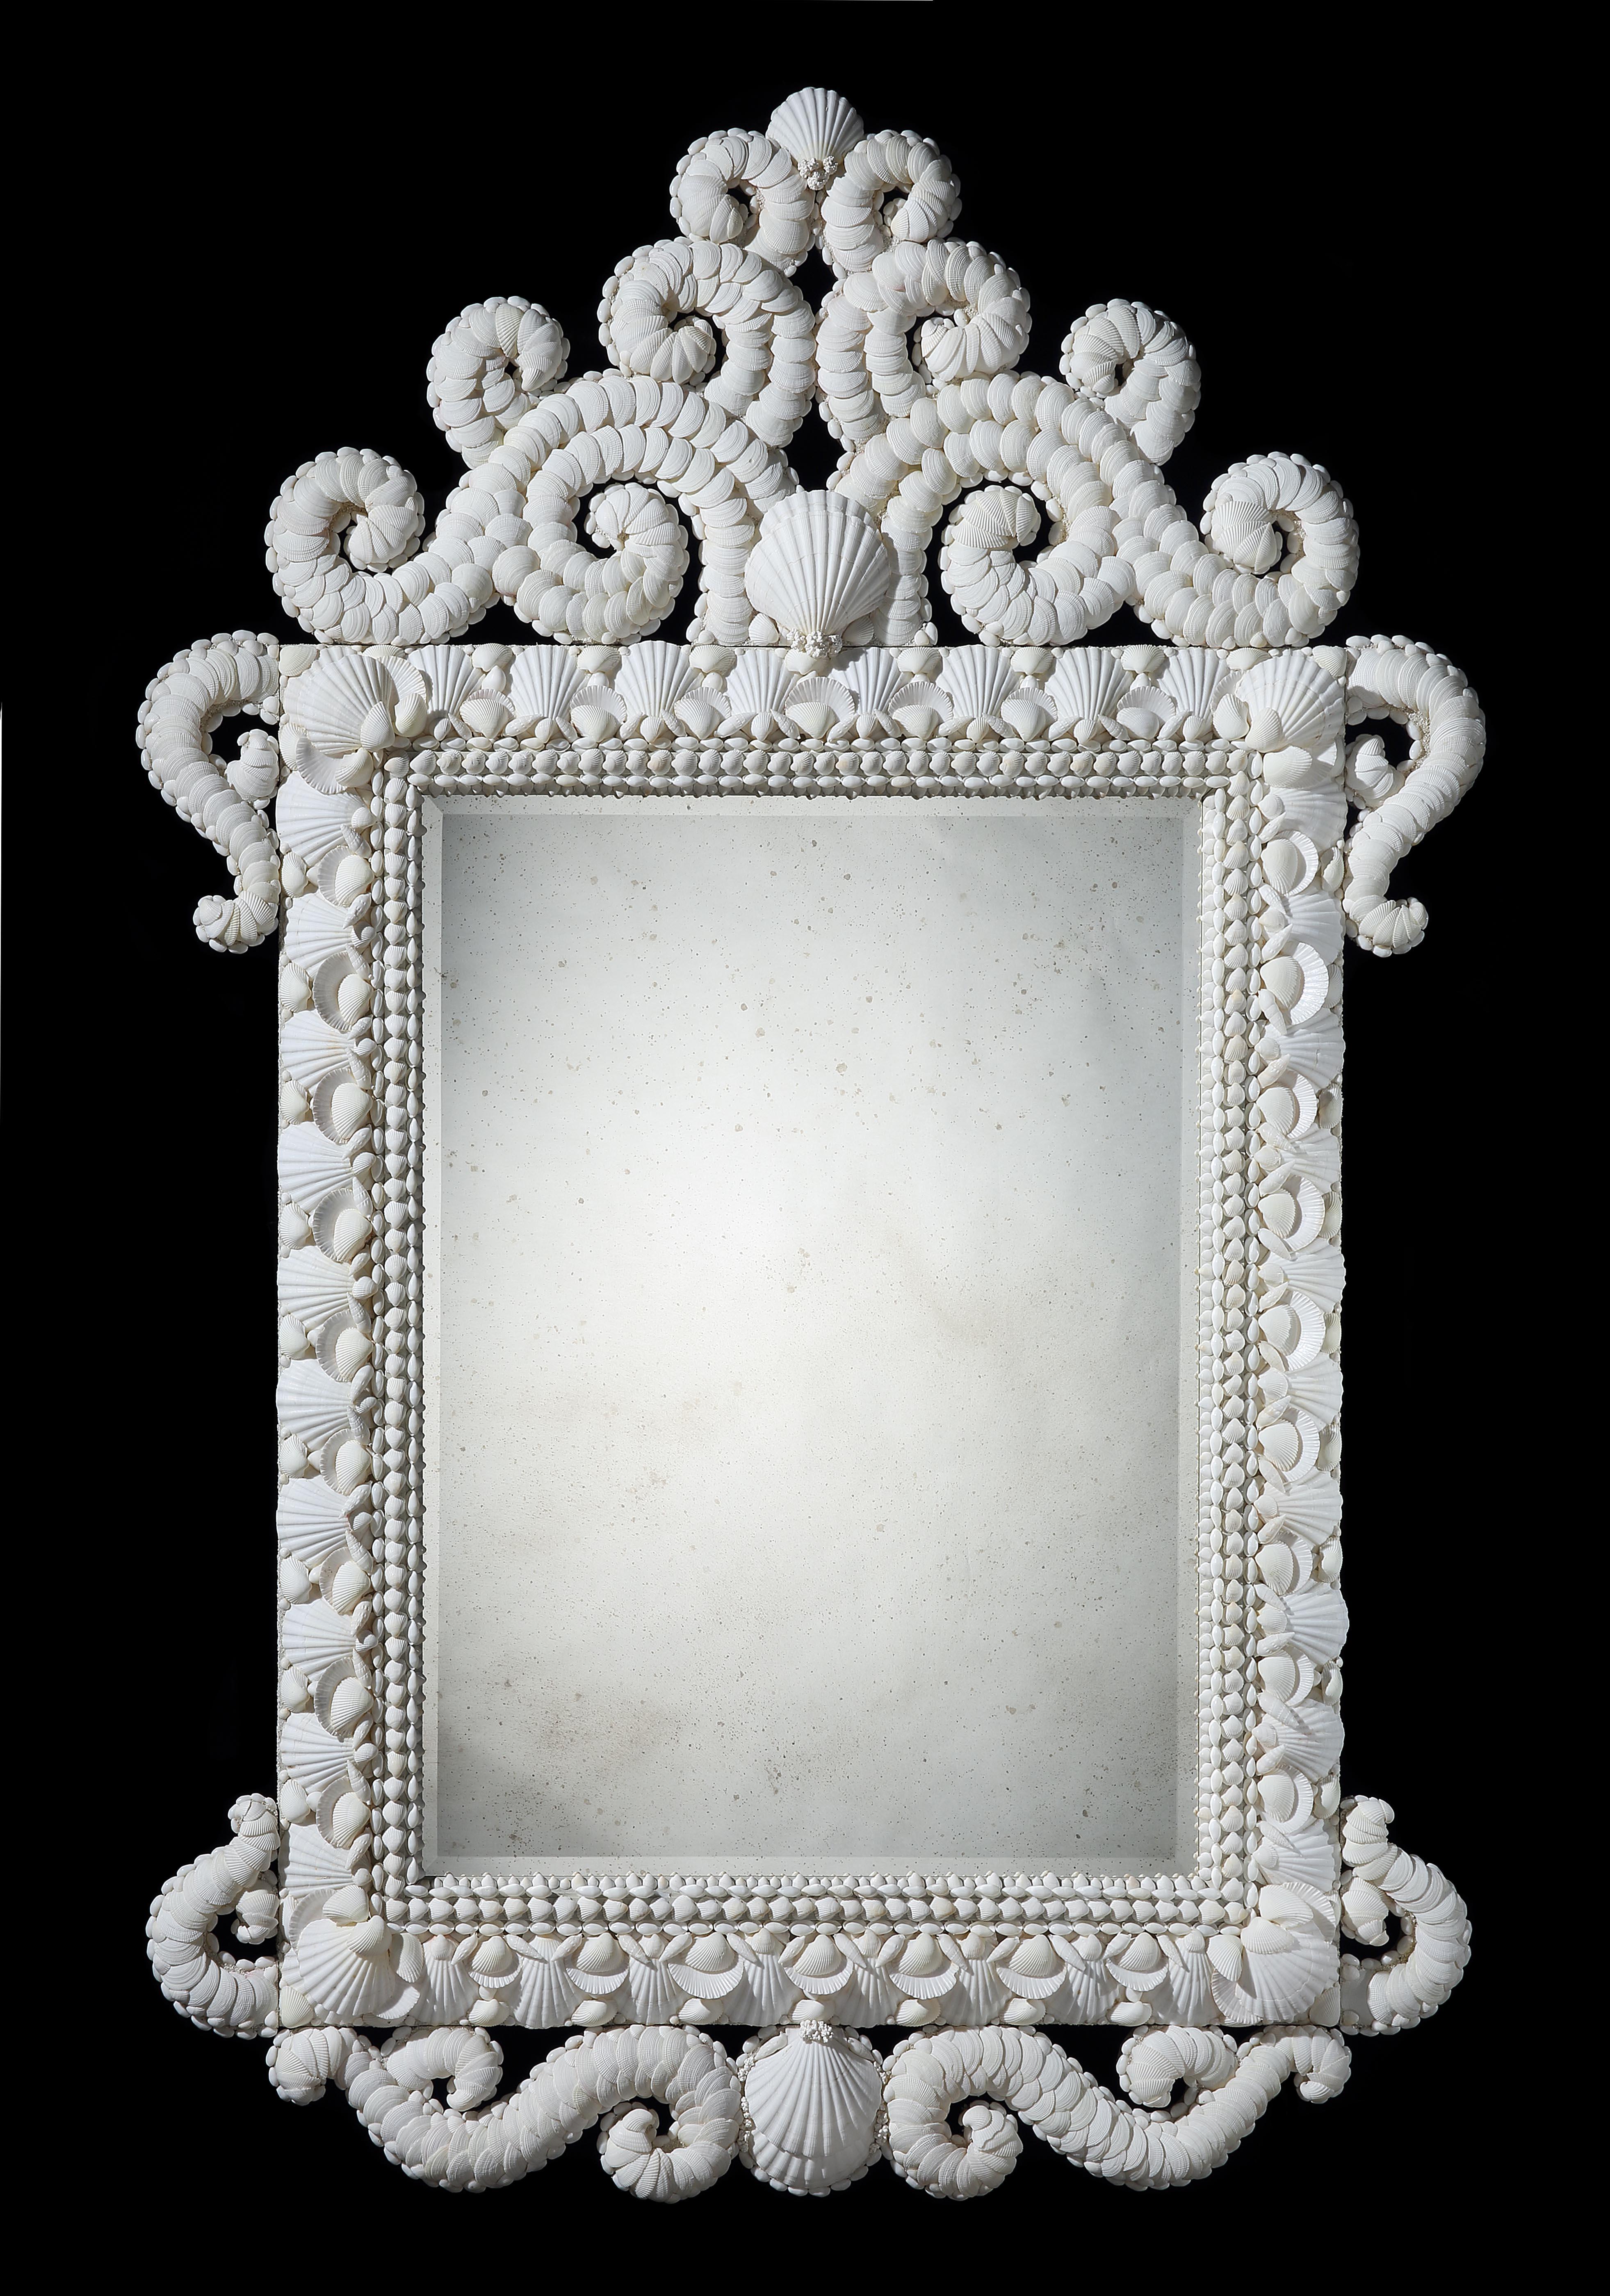 Très beau miroir à coquille blanc de grande taille, avec des crêtes, des côtés et un tablier à volutes. La plaque de miroir est biseautée et vieillie à la main.

Par Tess Morley.